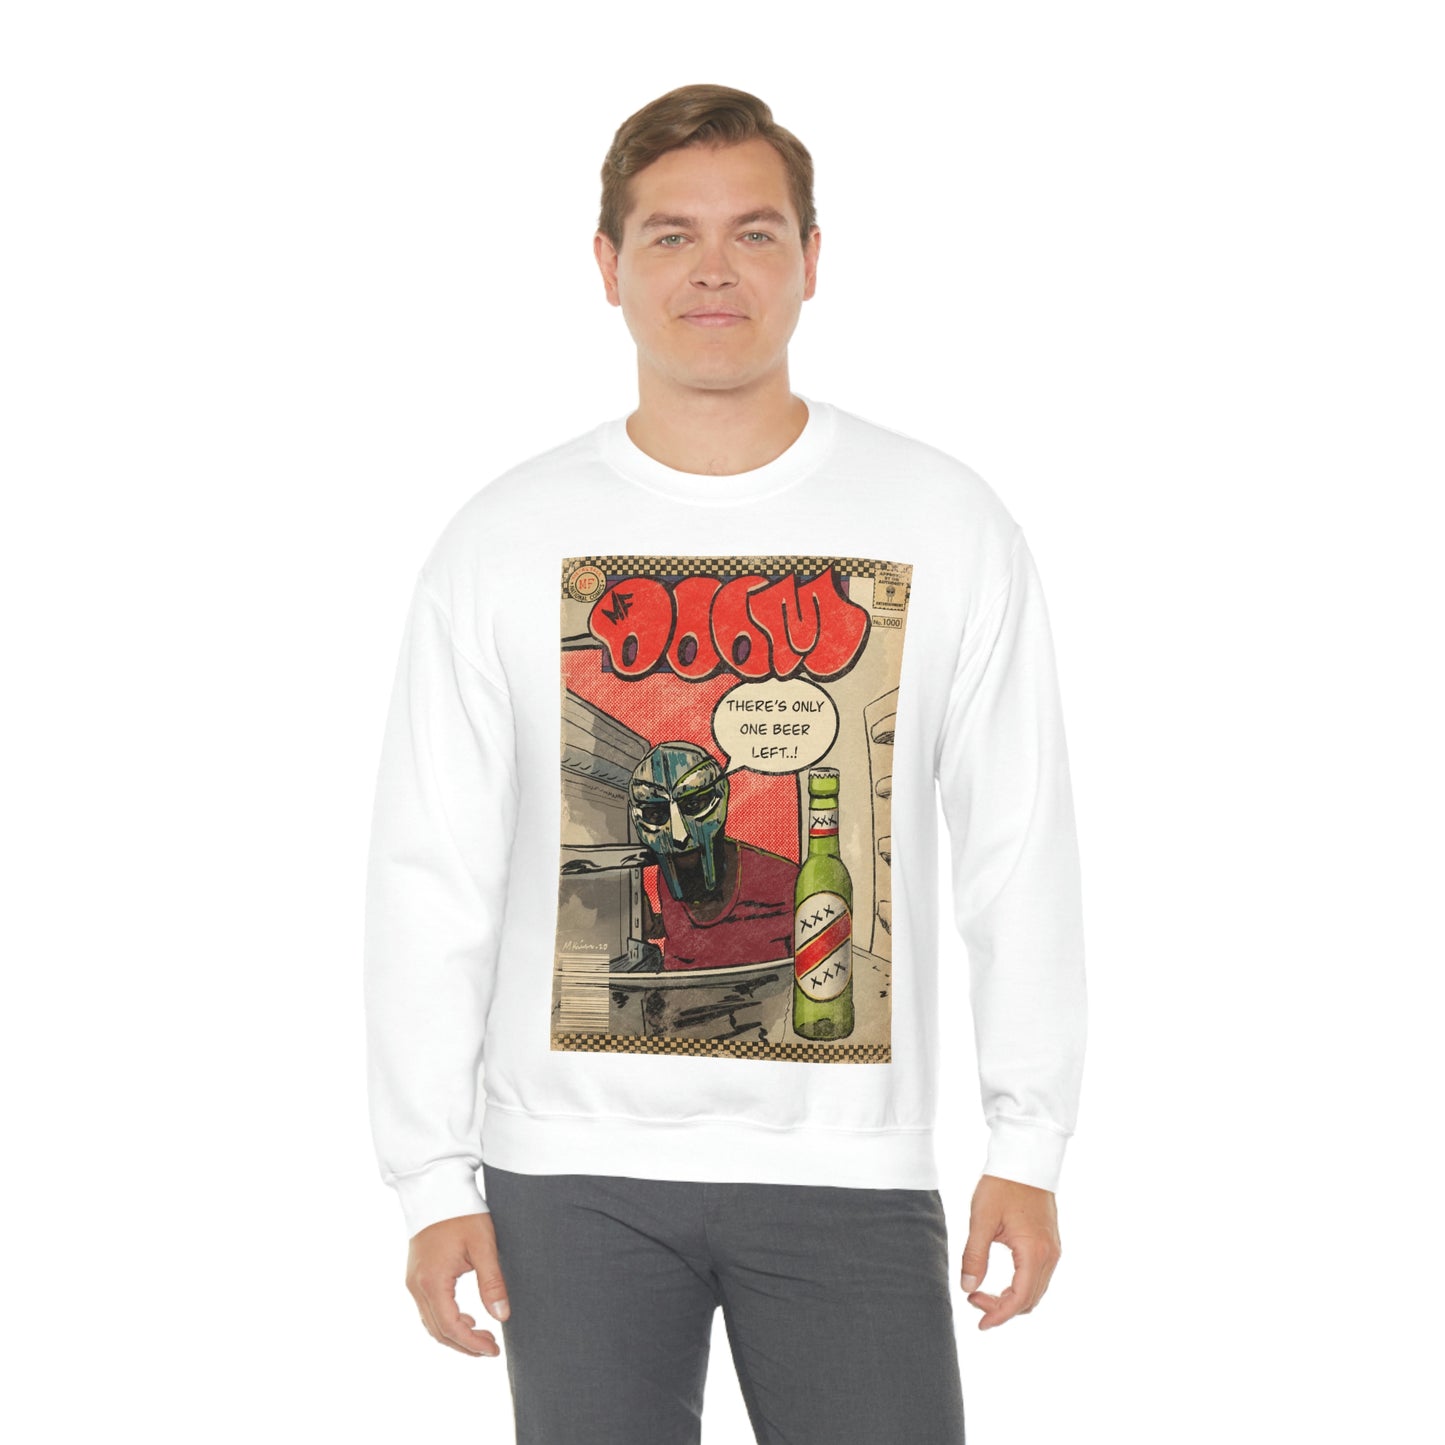 MF DOOM - One Beer - Unisex Heavy Blend™ Crewneck Sweatshirt